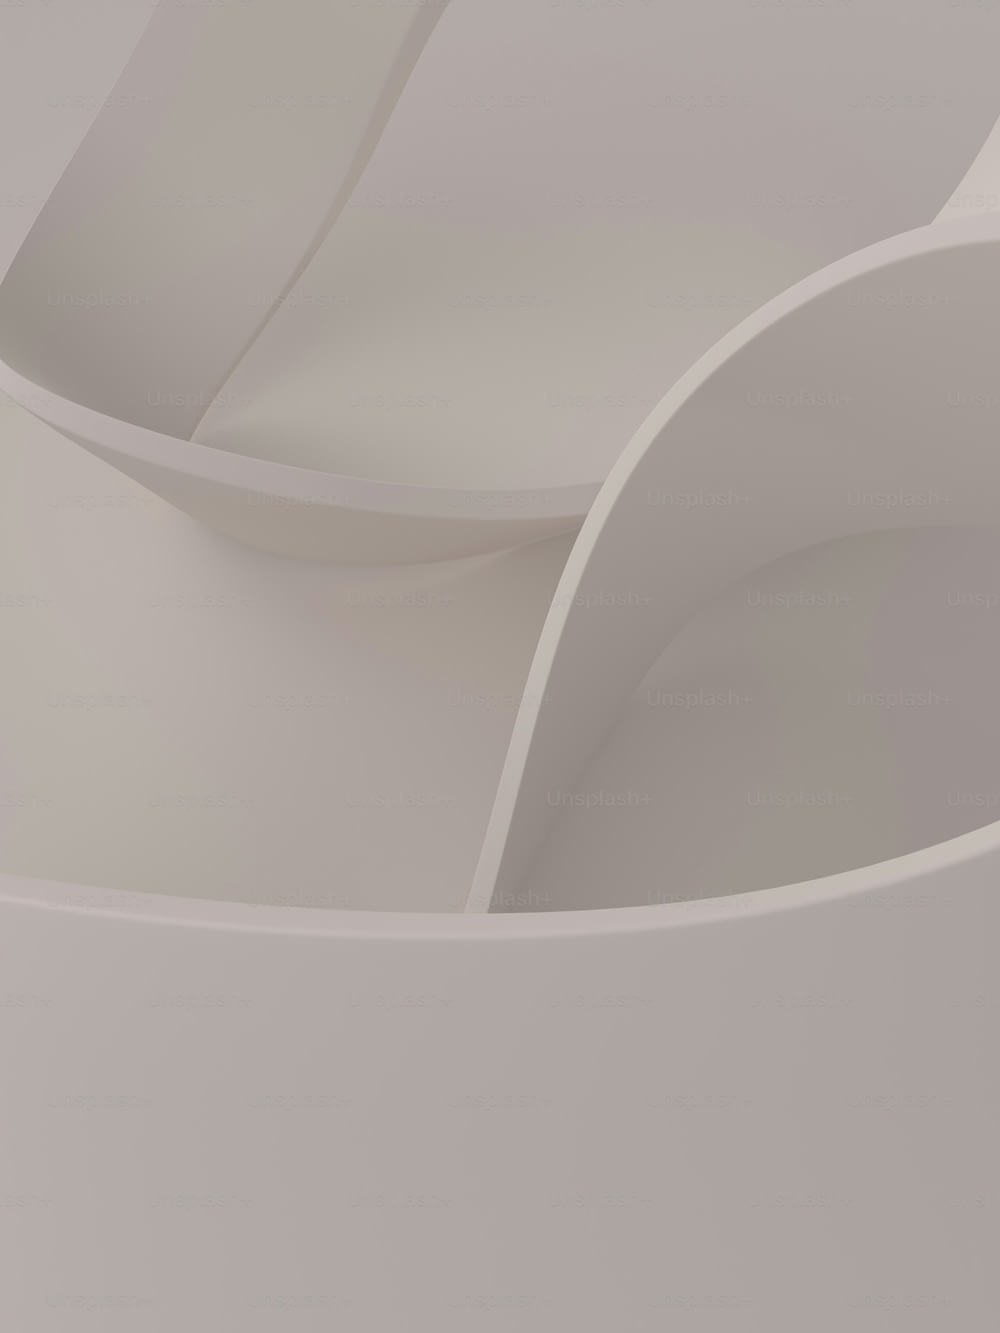 um close up de um objeto branco com bordas curvas